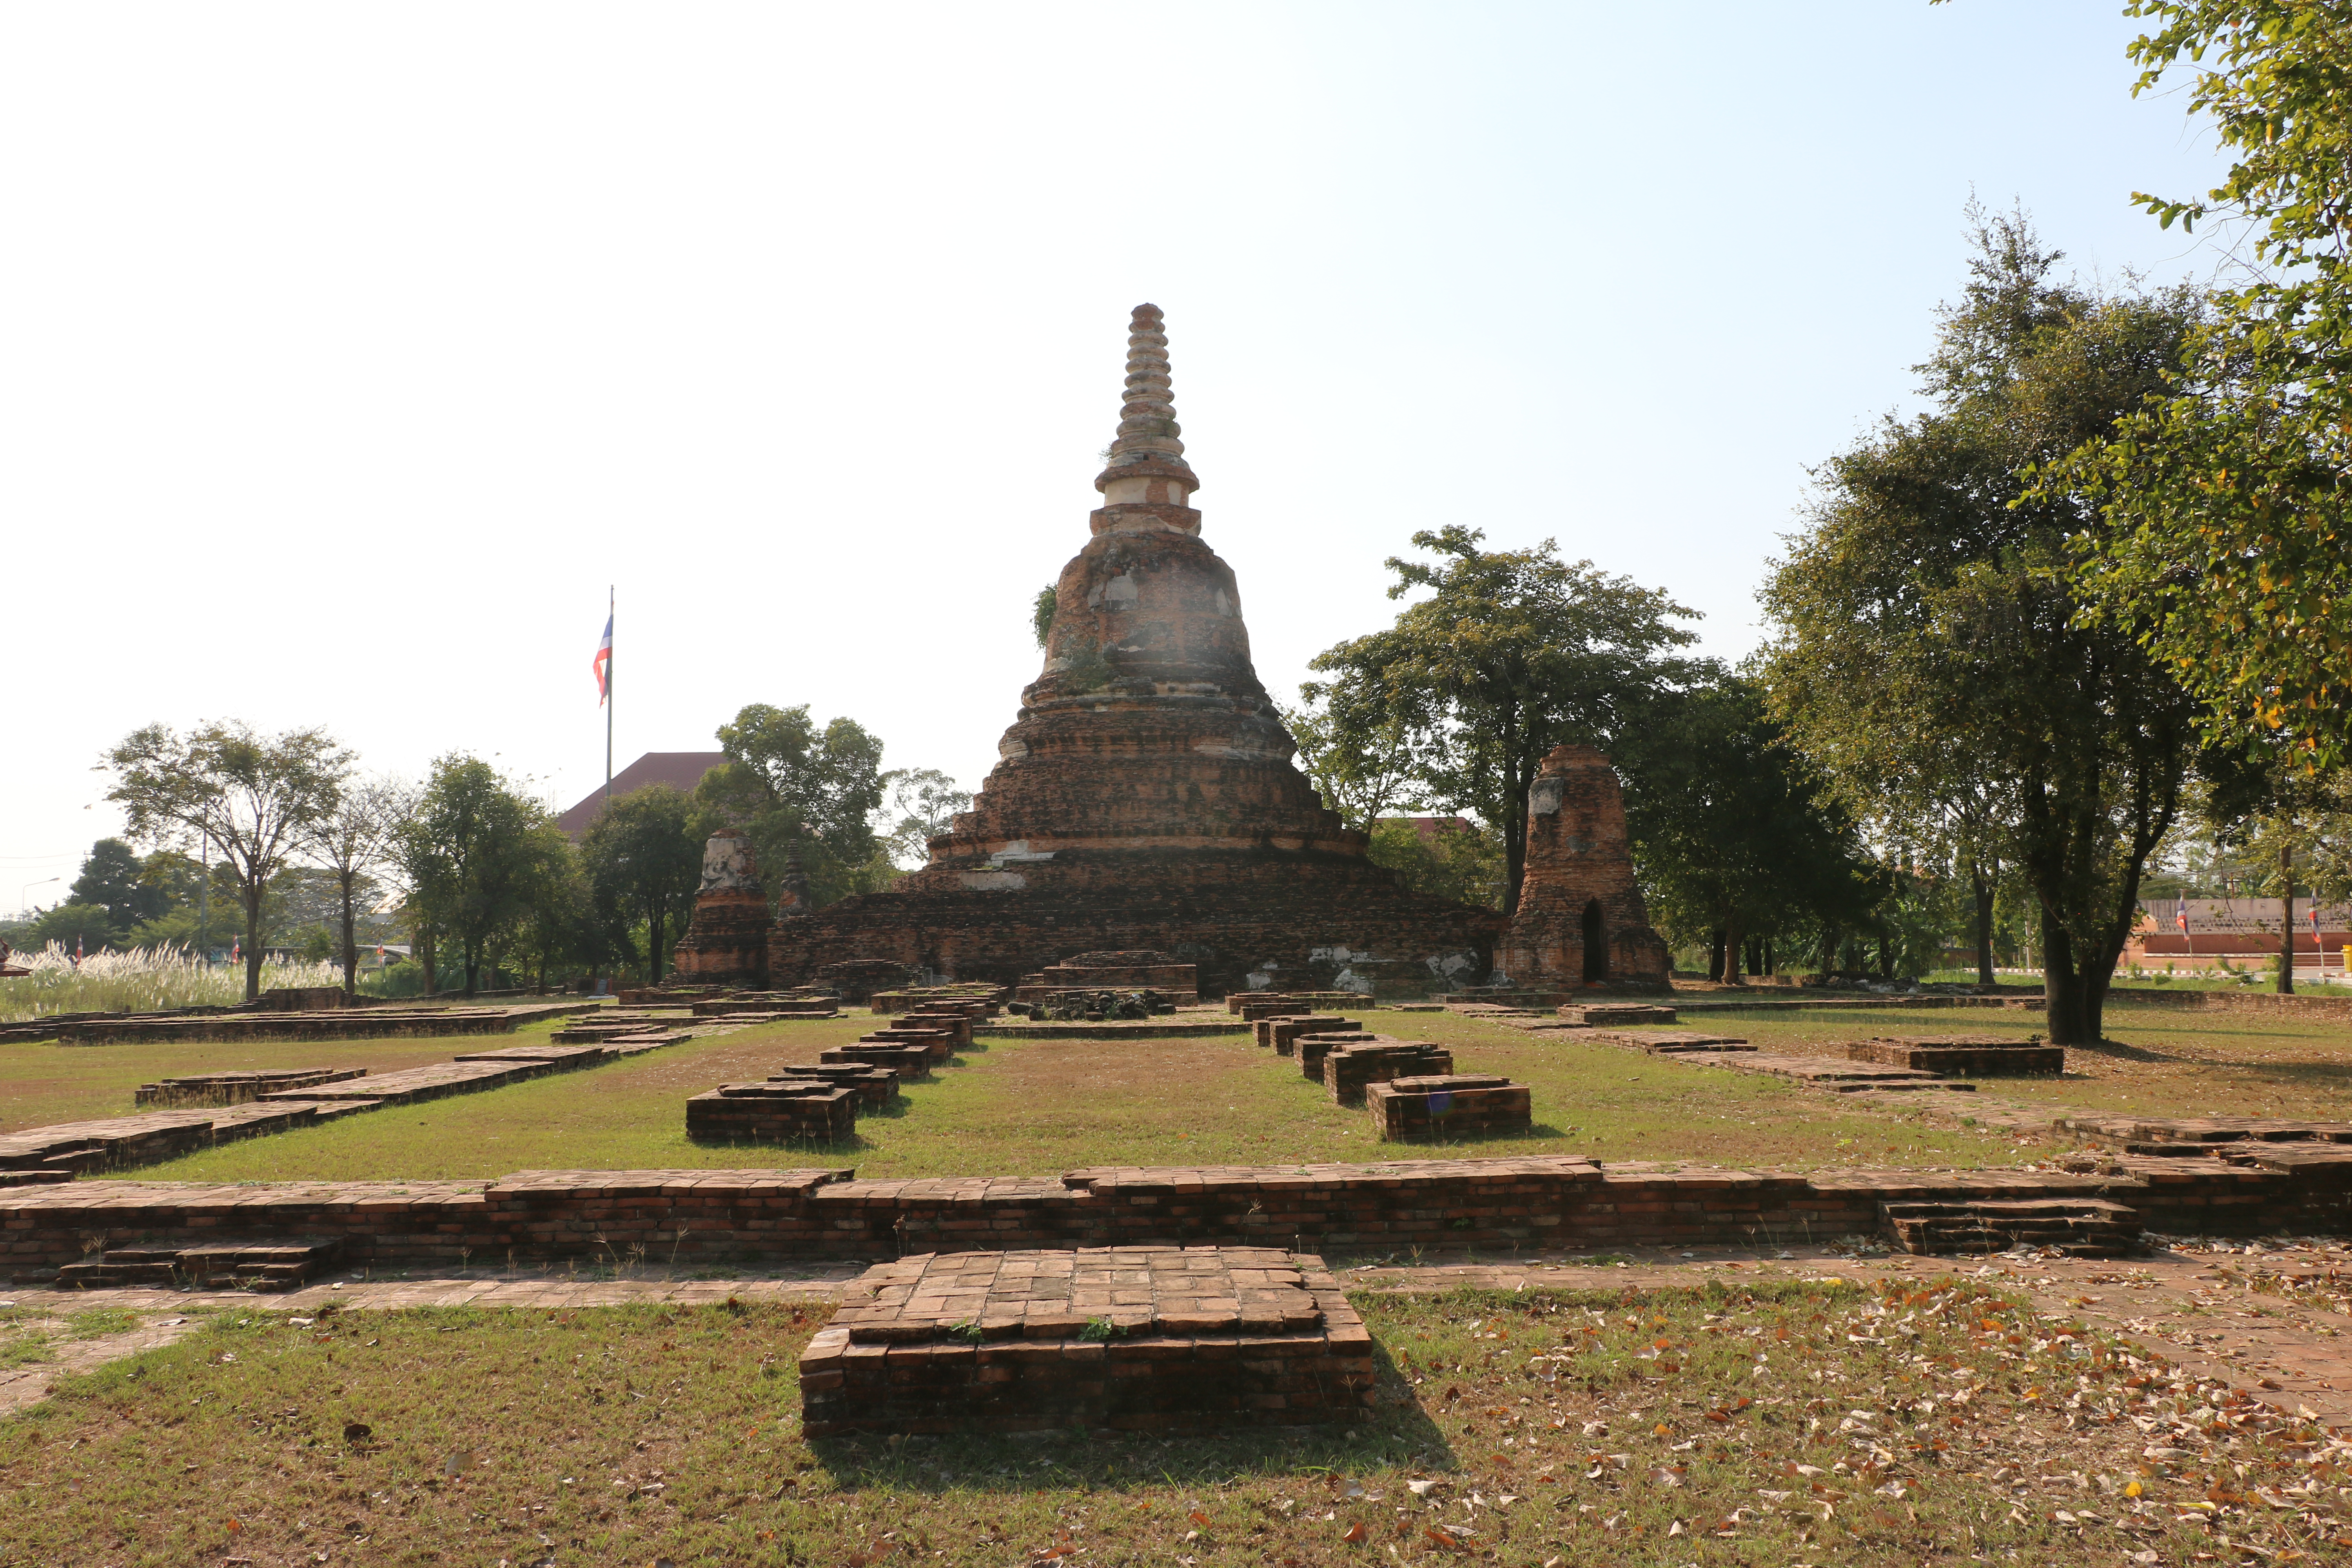 ワットチャカワン / アユタヤ王朝初期に作られ、王朝滅亡まで長く使われたといわれる仏教寺院遺跡